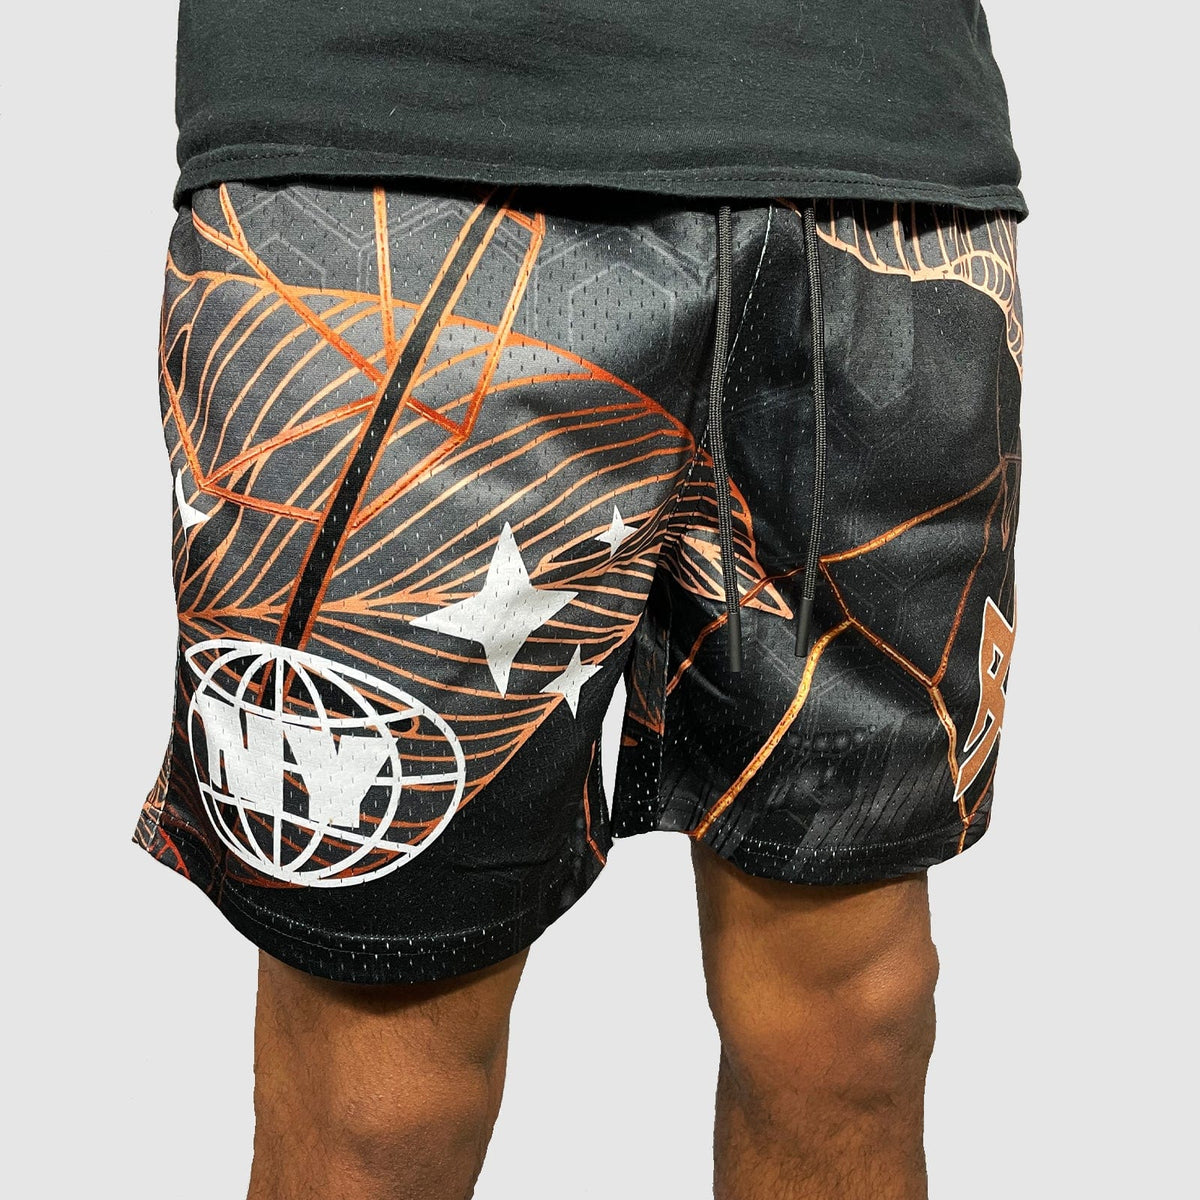 NY Palms Shorts